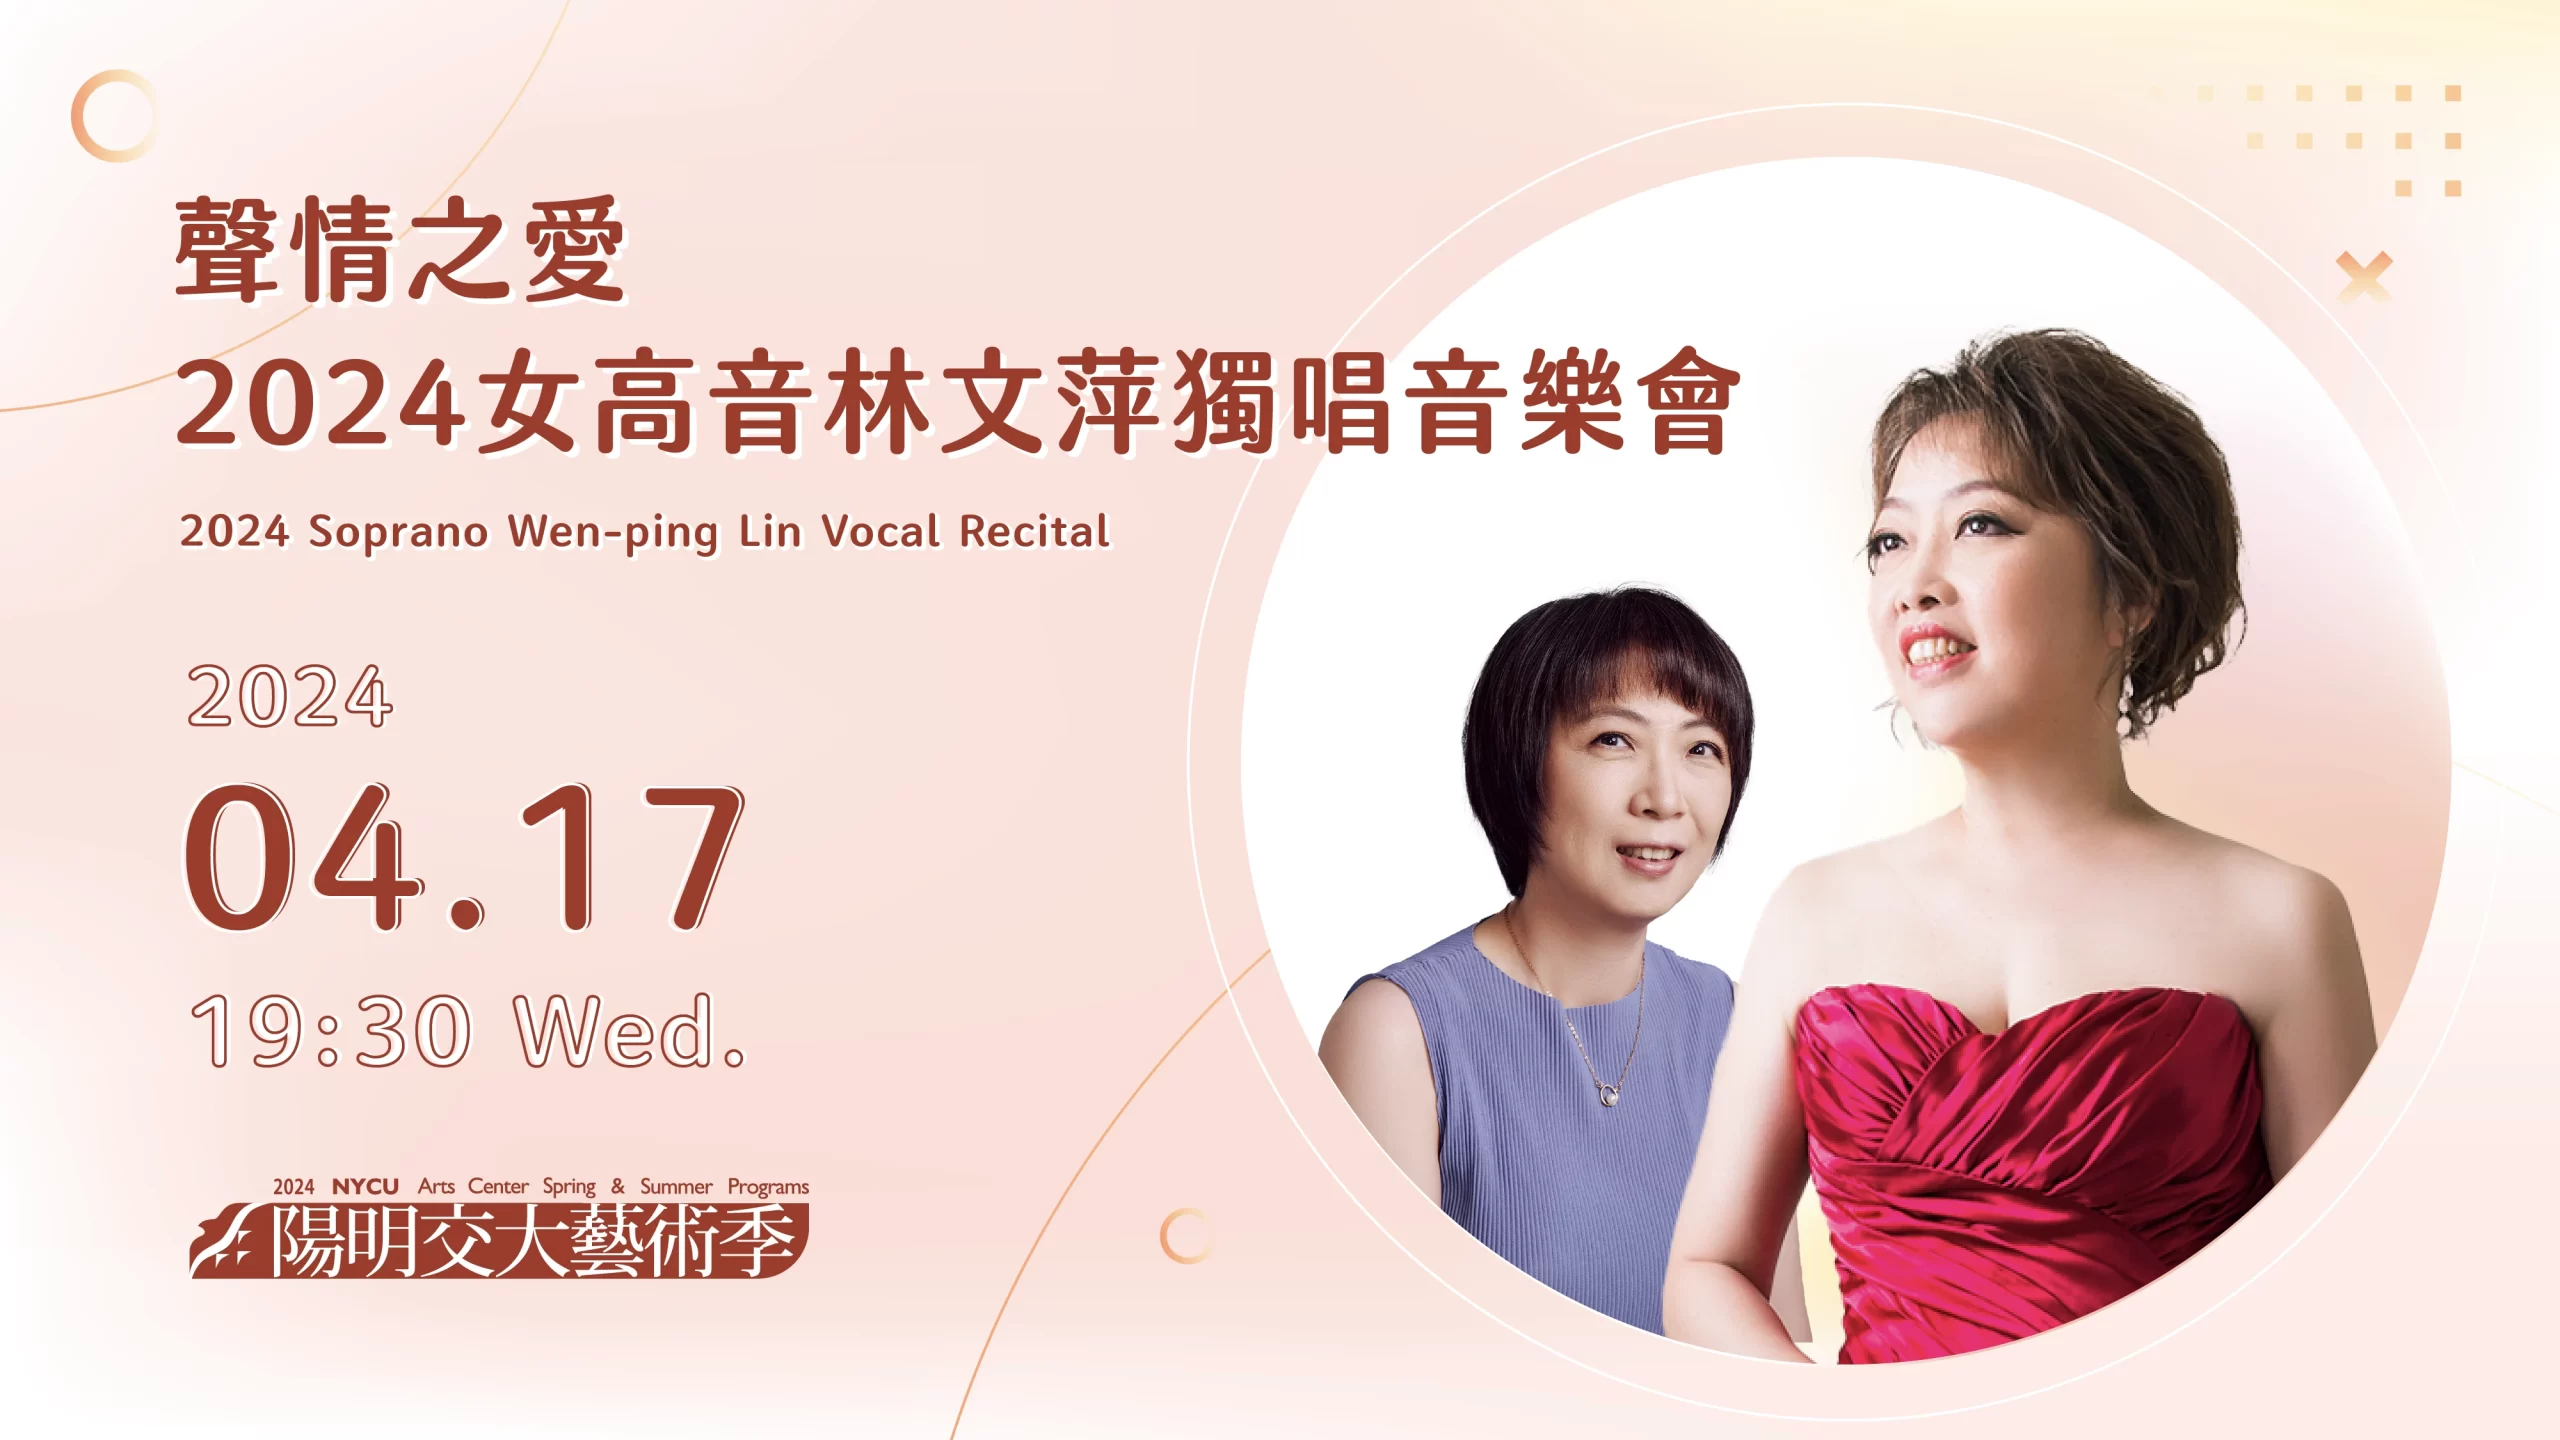 聲情之愛－2024女高音林文萍獨唱音樂會 2024 Soprano Wen-ping Lin Vocal Recital